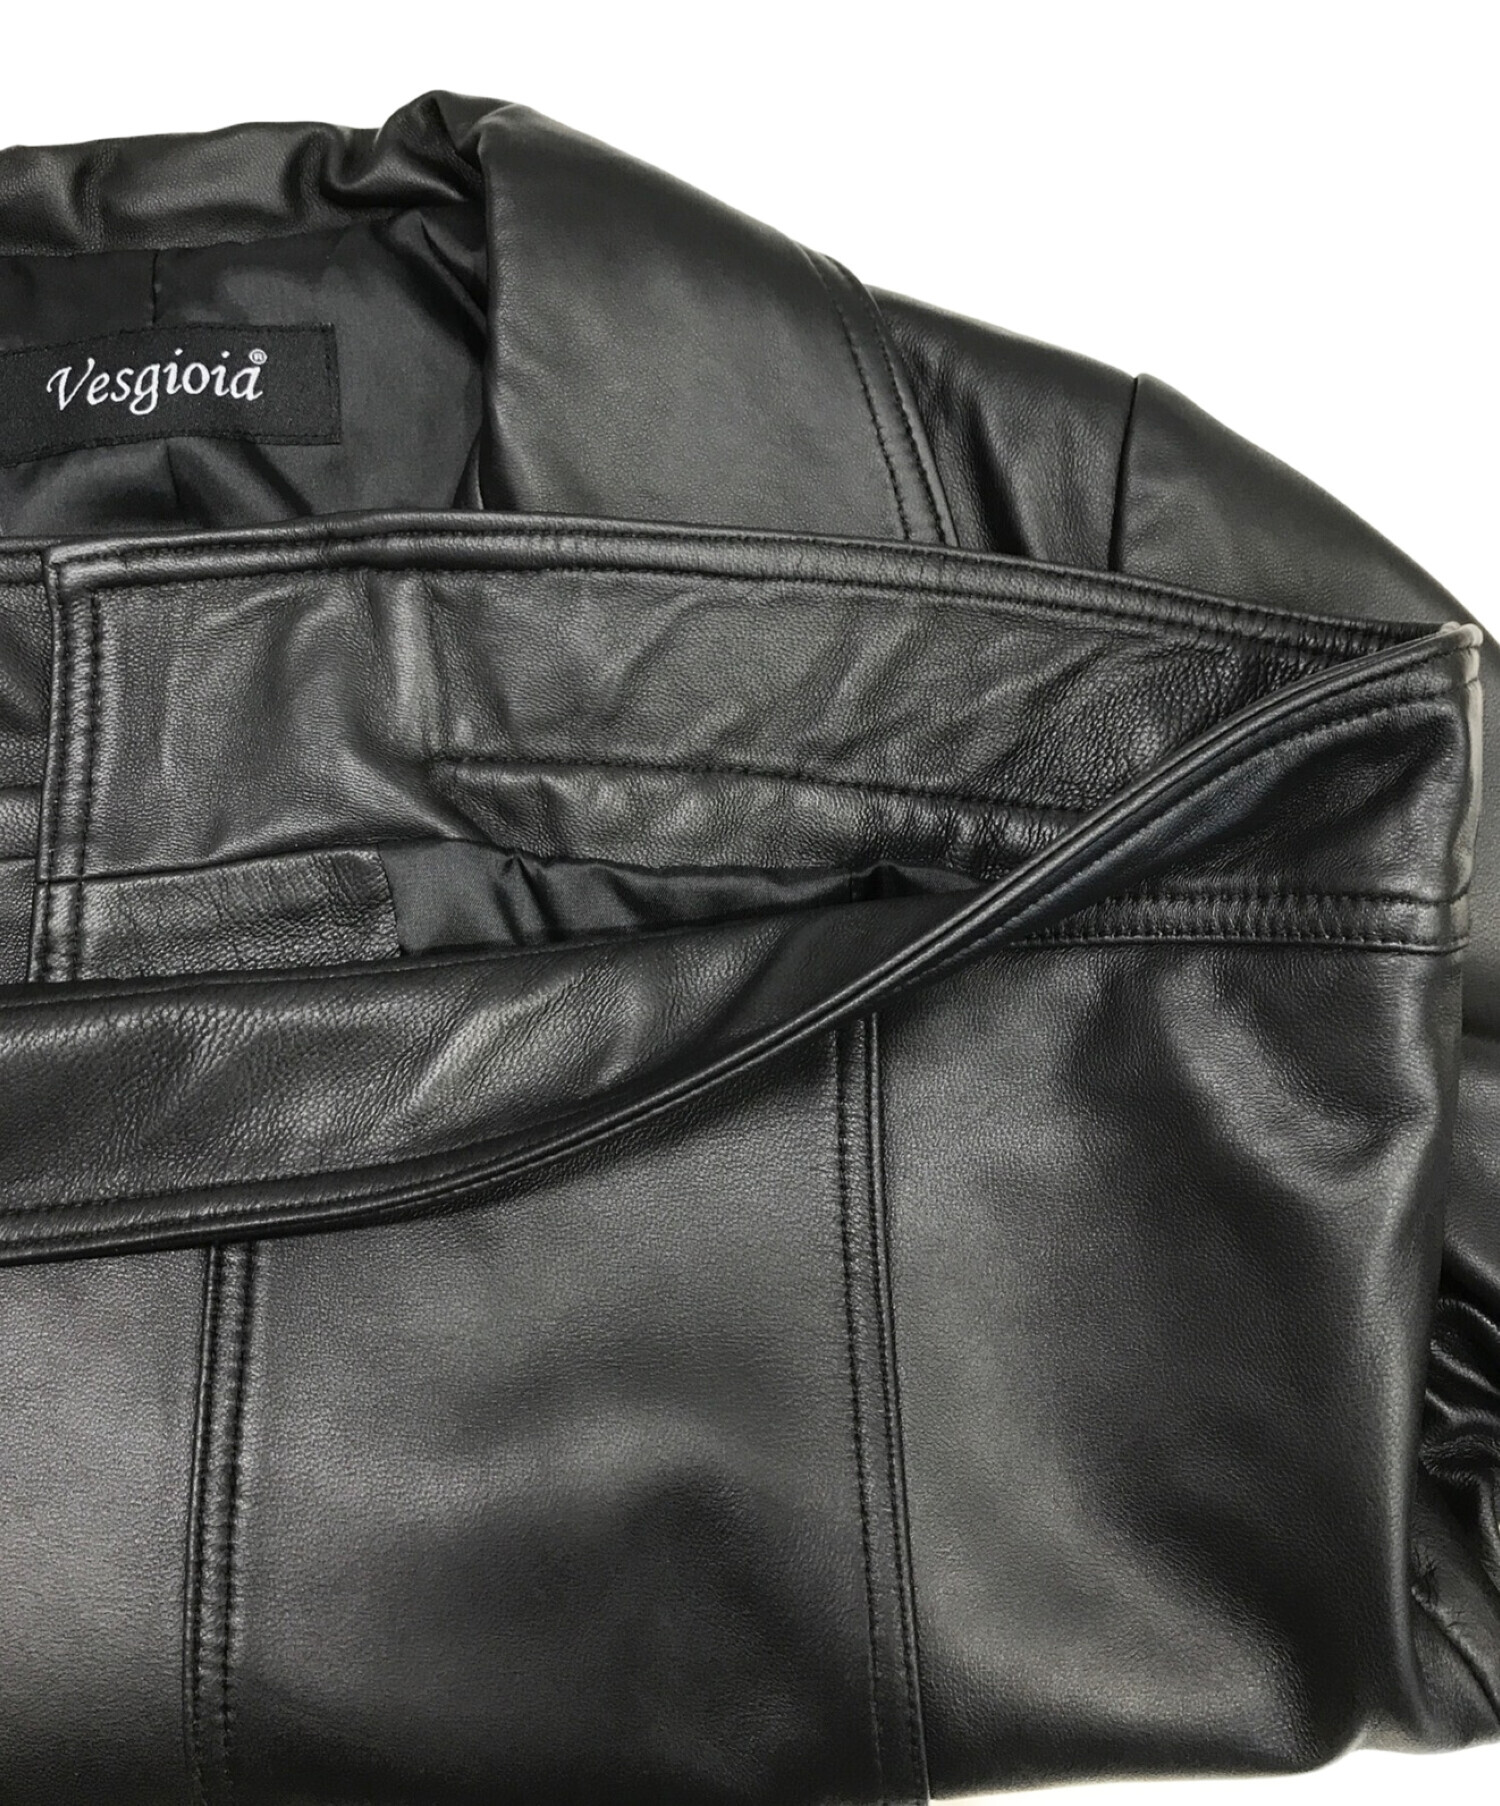 Vesgioia (ベスジョーヤ) ラムレザーライダースジャケット ブラック サイズ:L